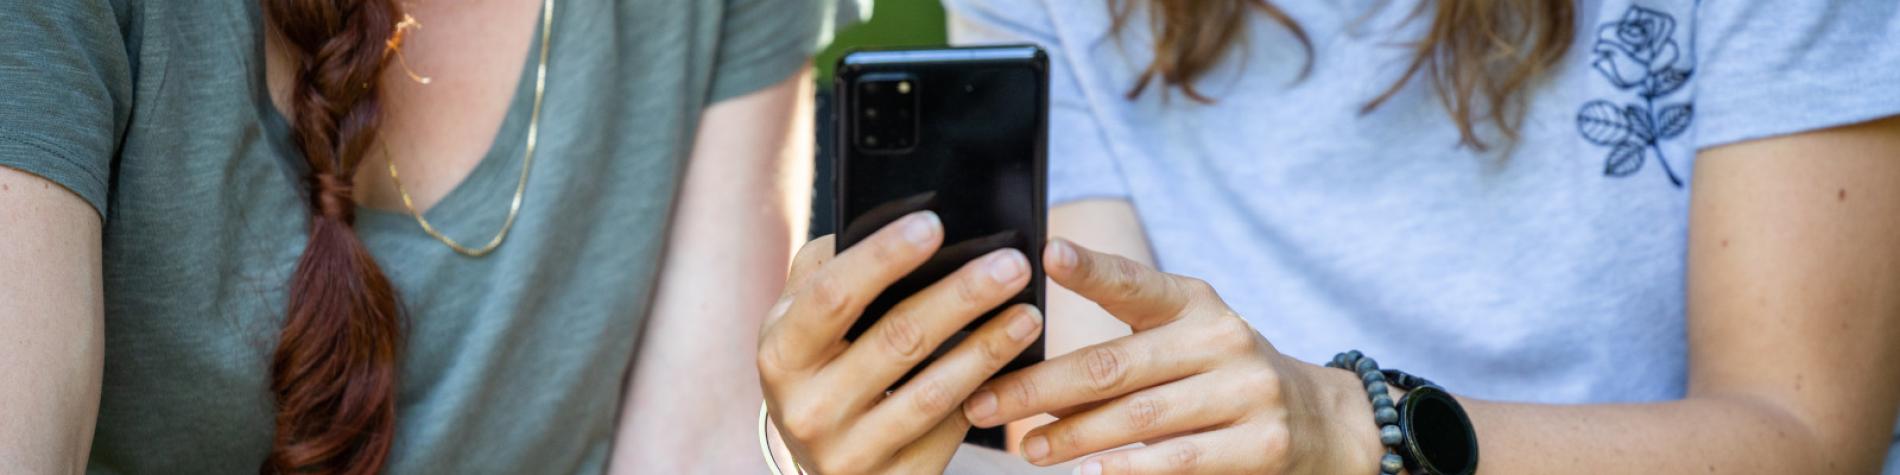 Zwei Mädchen rufen gemeinsam die Informationen ab, die auf dem Bildschirm eines Smartphones angezeigt werden.